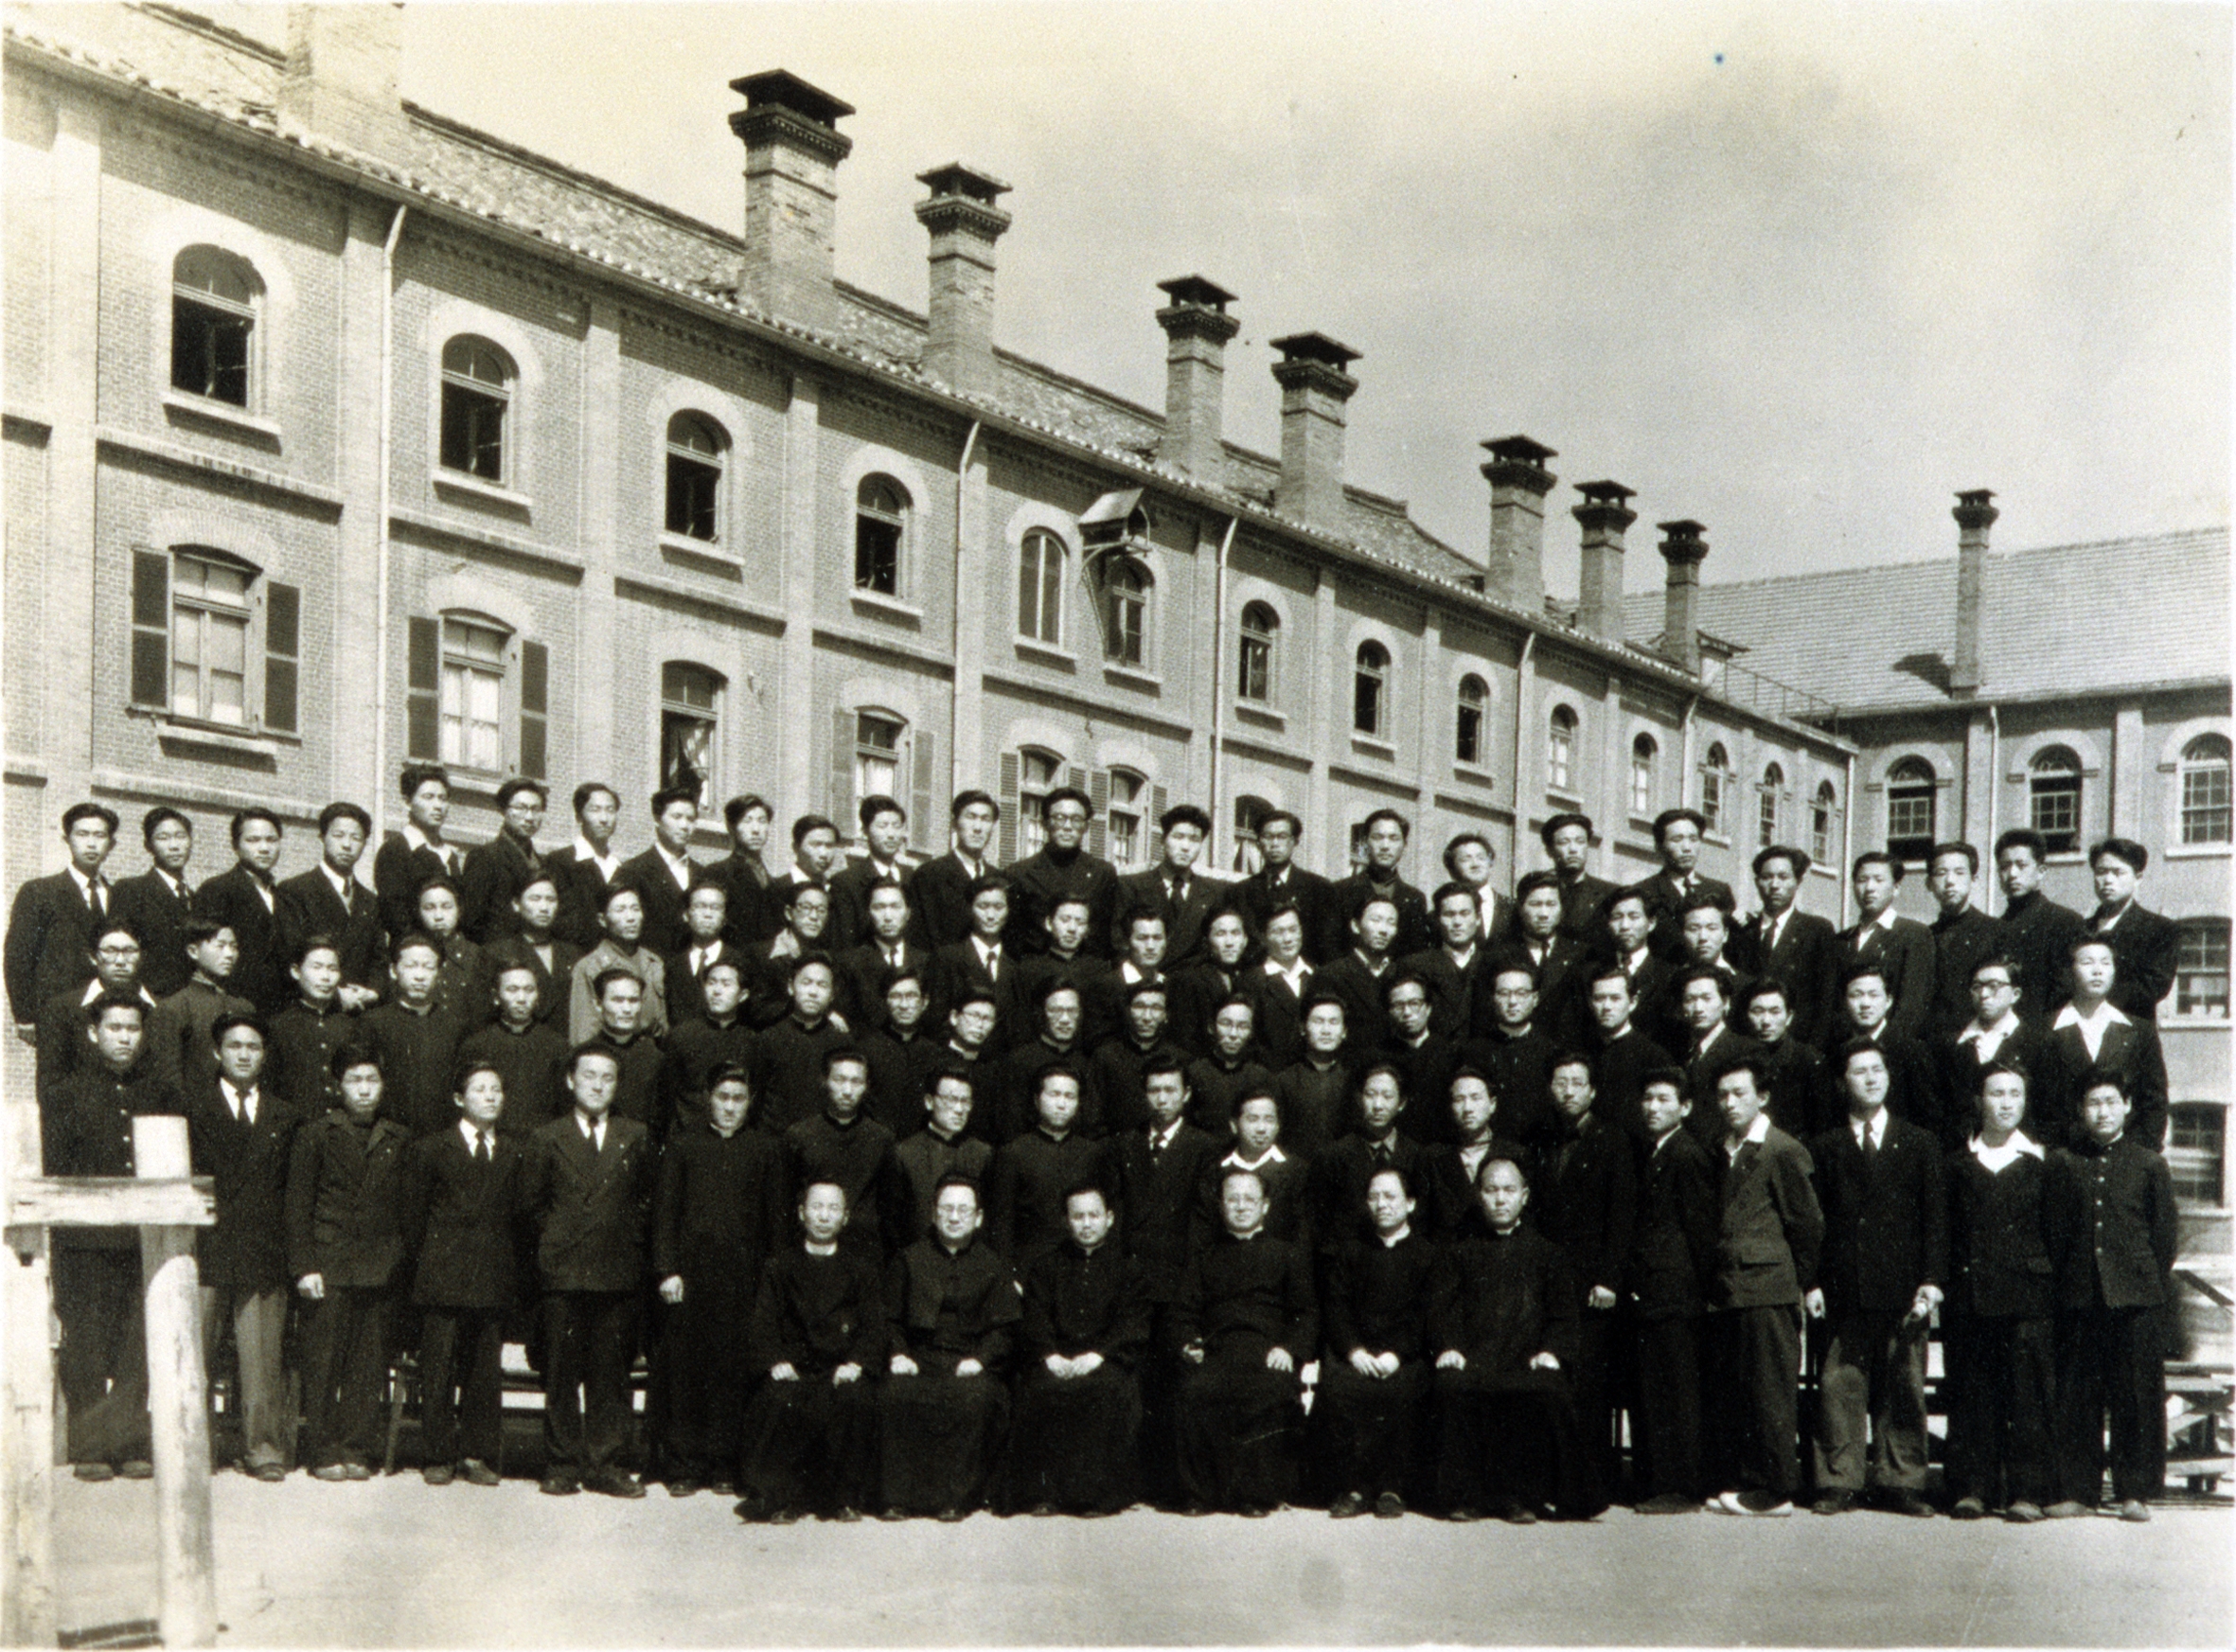 성신대학(1947~1959) (2)의 관련된 이미지 입니다.